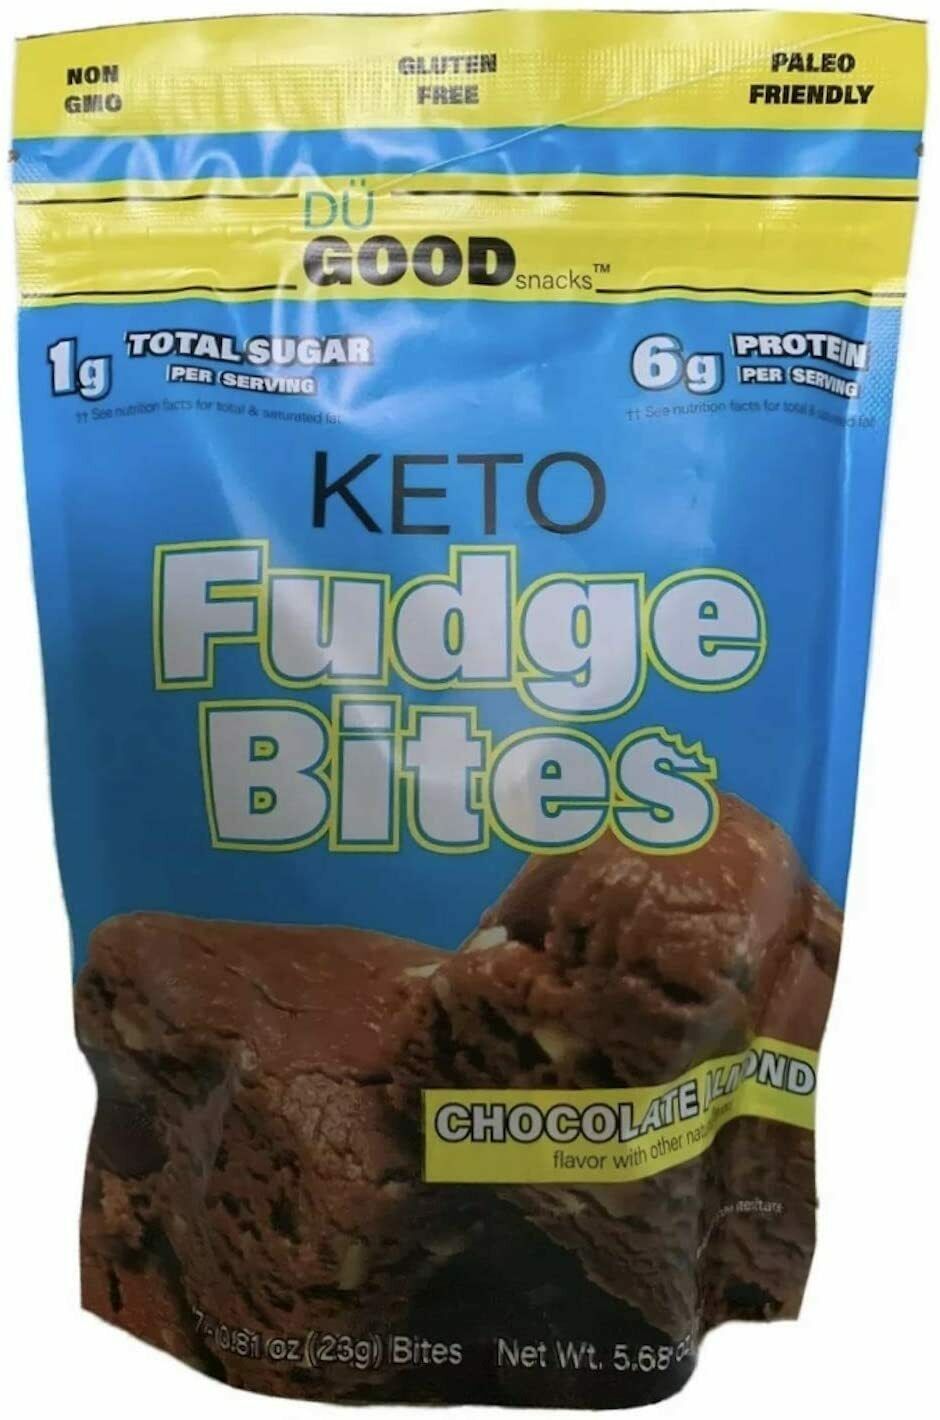 Keto Fudge Bites Chocolate Almond Gluten Free Paleo Non-GMO 161g Du Good Snacks